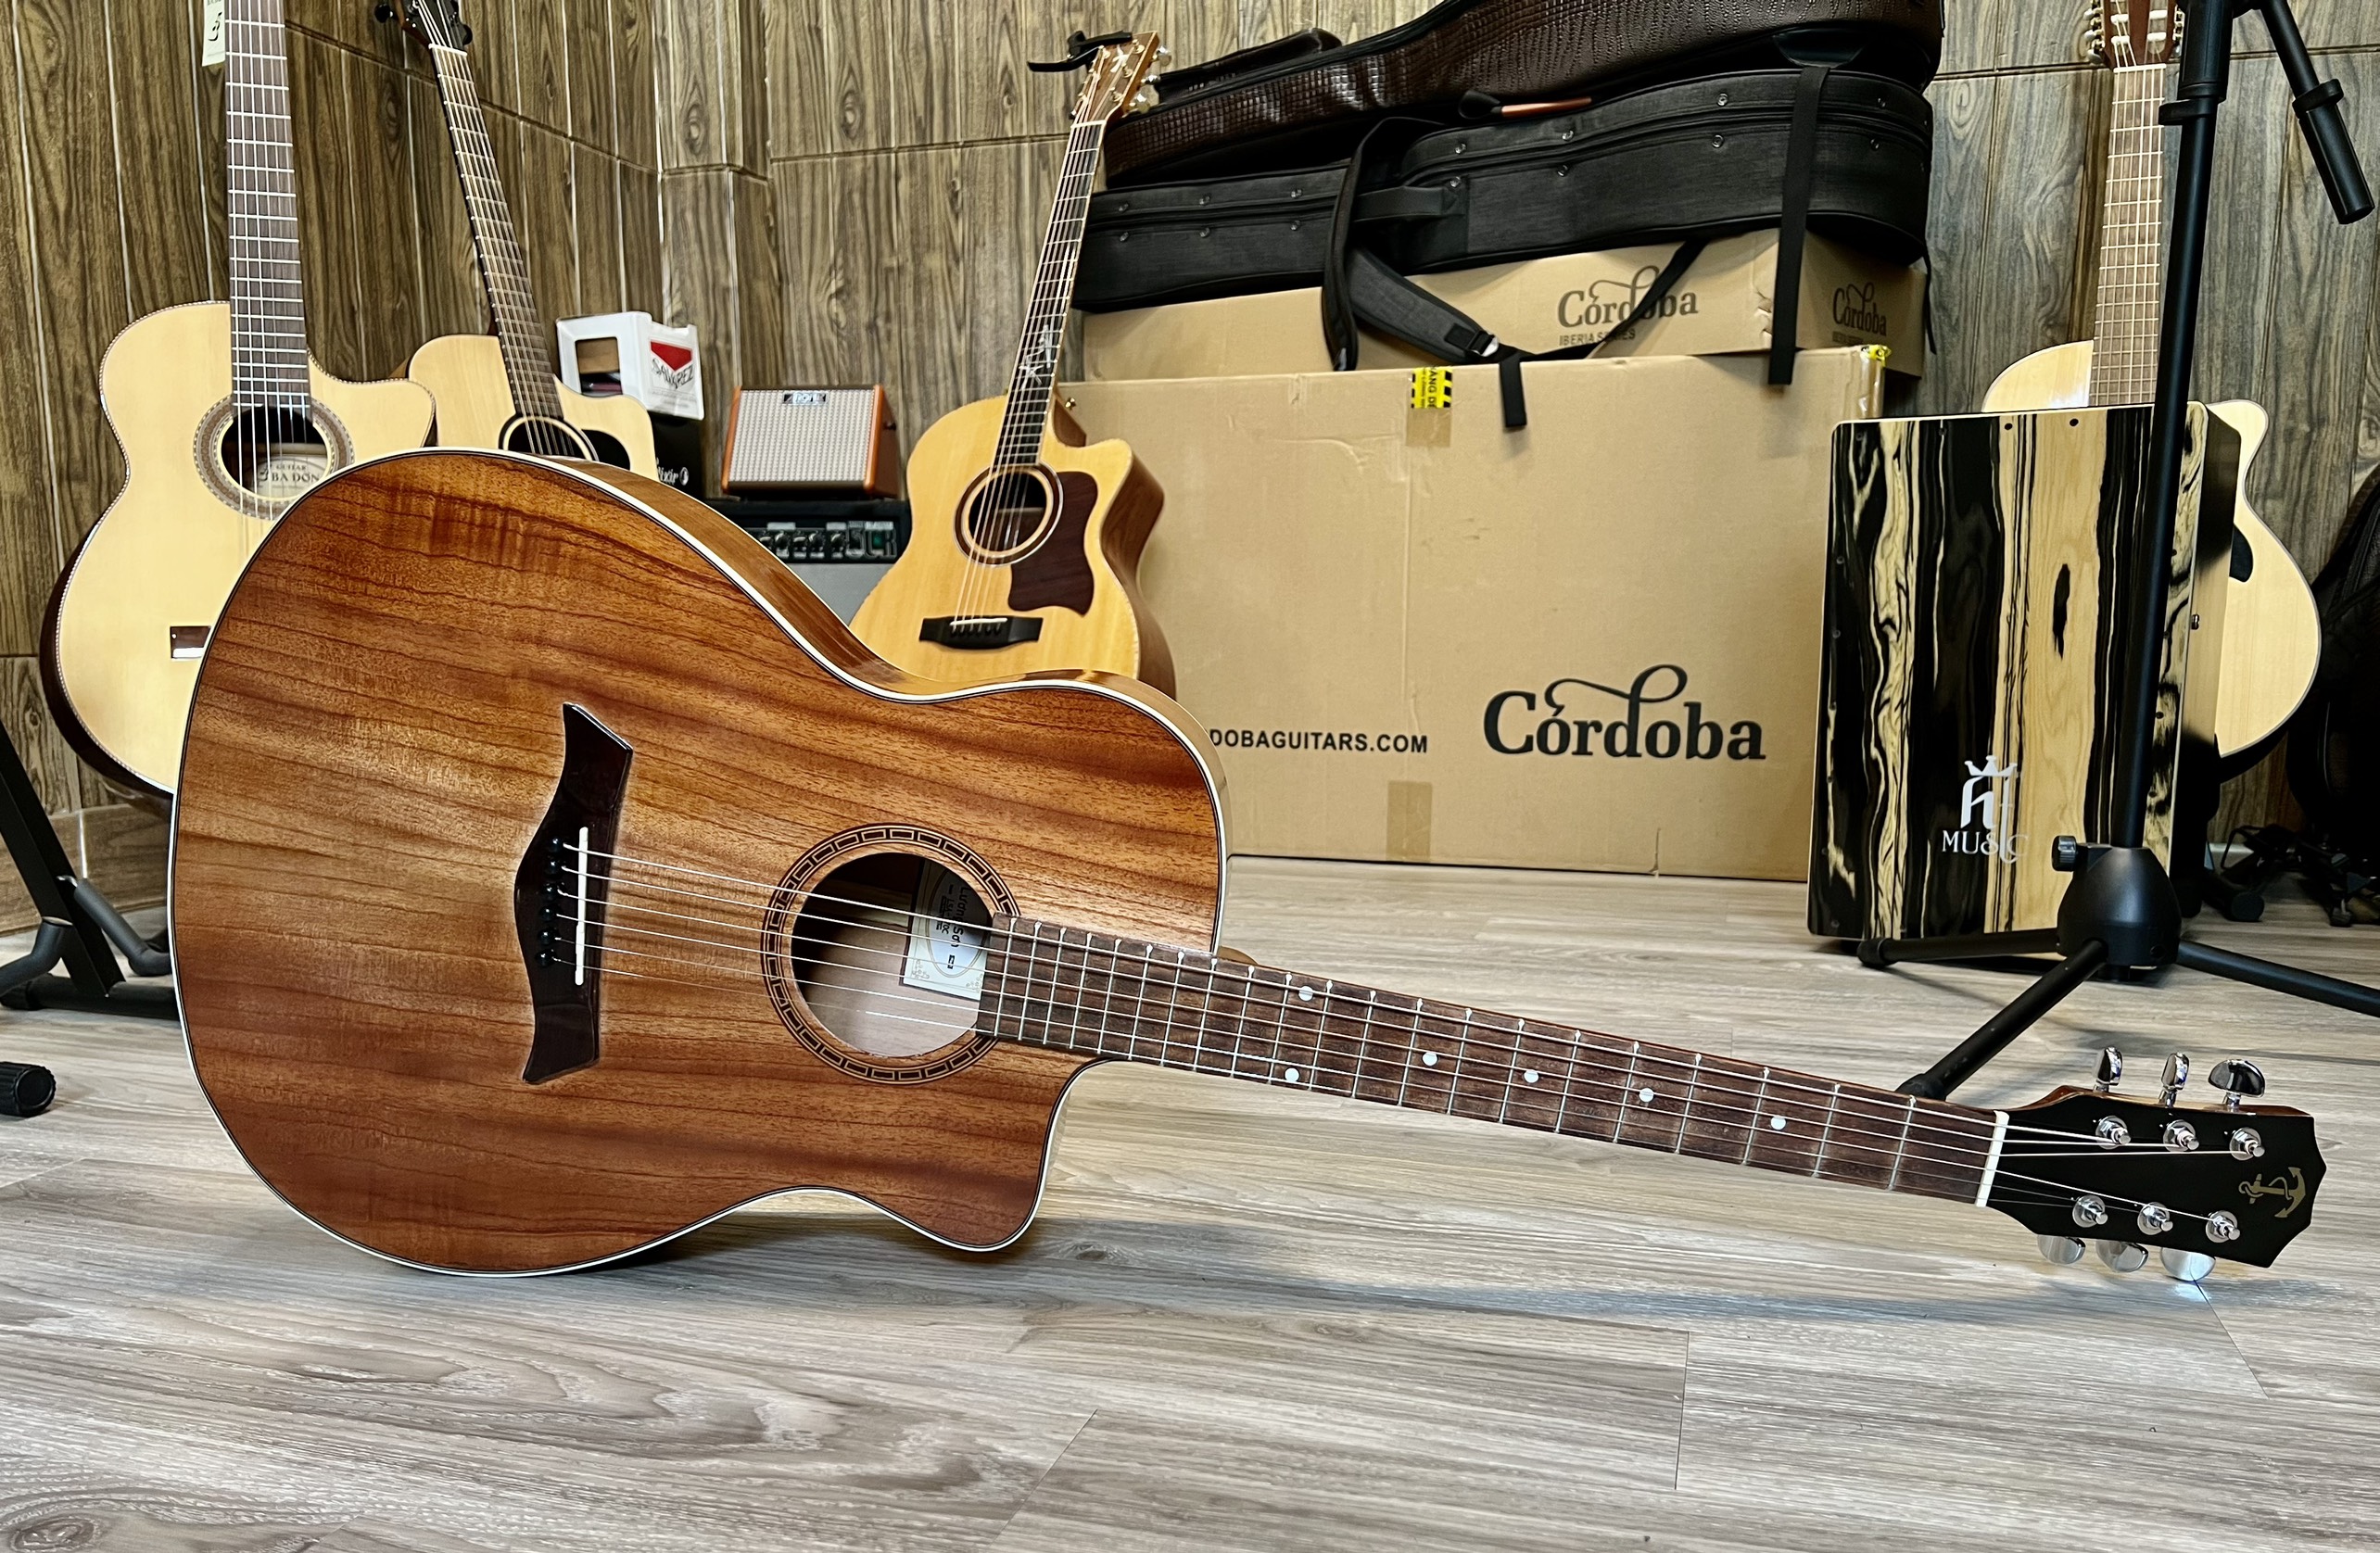 Shop Guitar Quảng Ninh, Địa Chỉ Bán Guitar Uy Tín, Sửa chữa, Lắp EQ đàn Guitar Chuyên Nghiệp